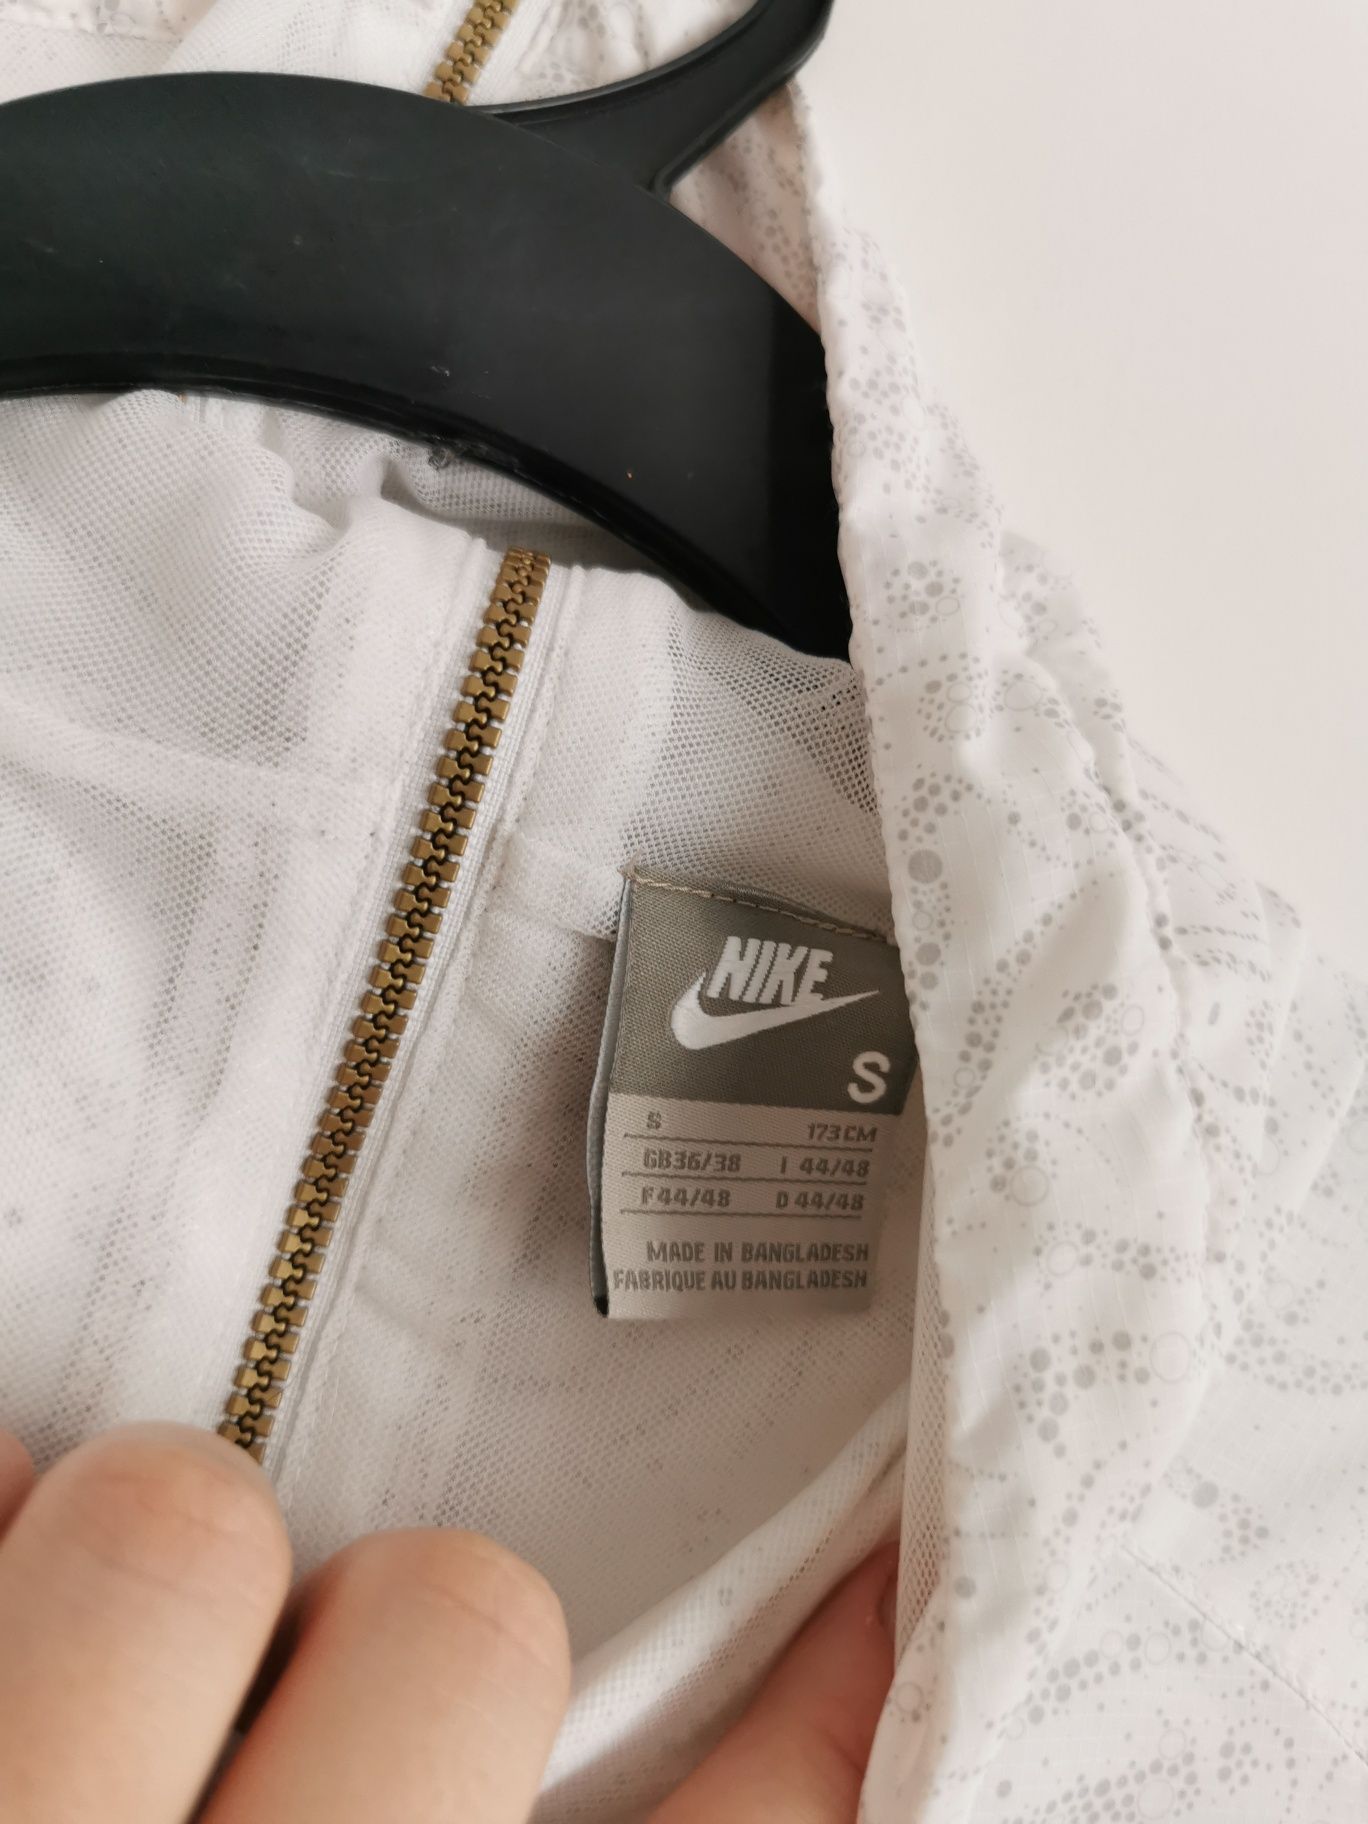 Nike kurtka cienka lekka damska logowana S/M